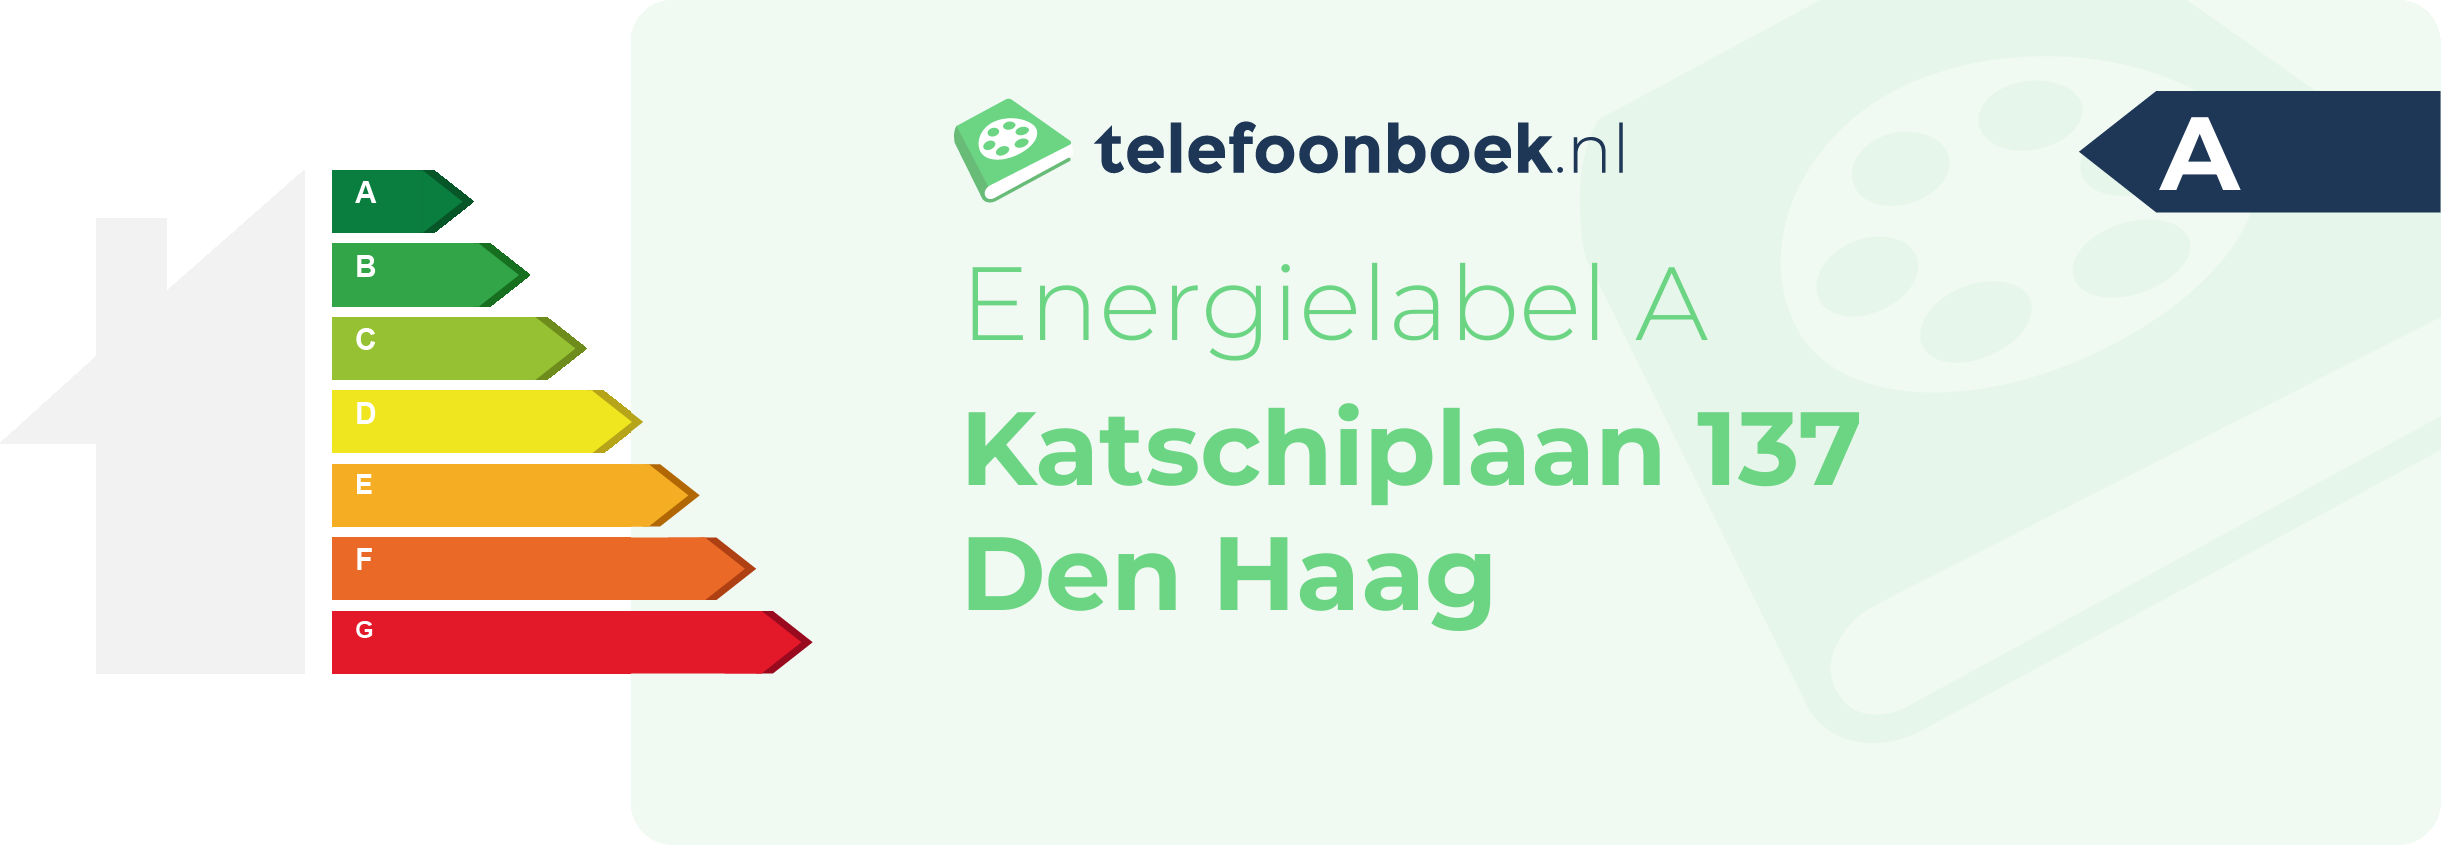 Energielabel Katschiplaan 137 Den Haag